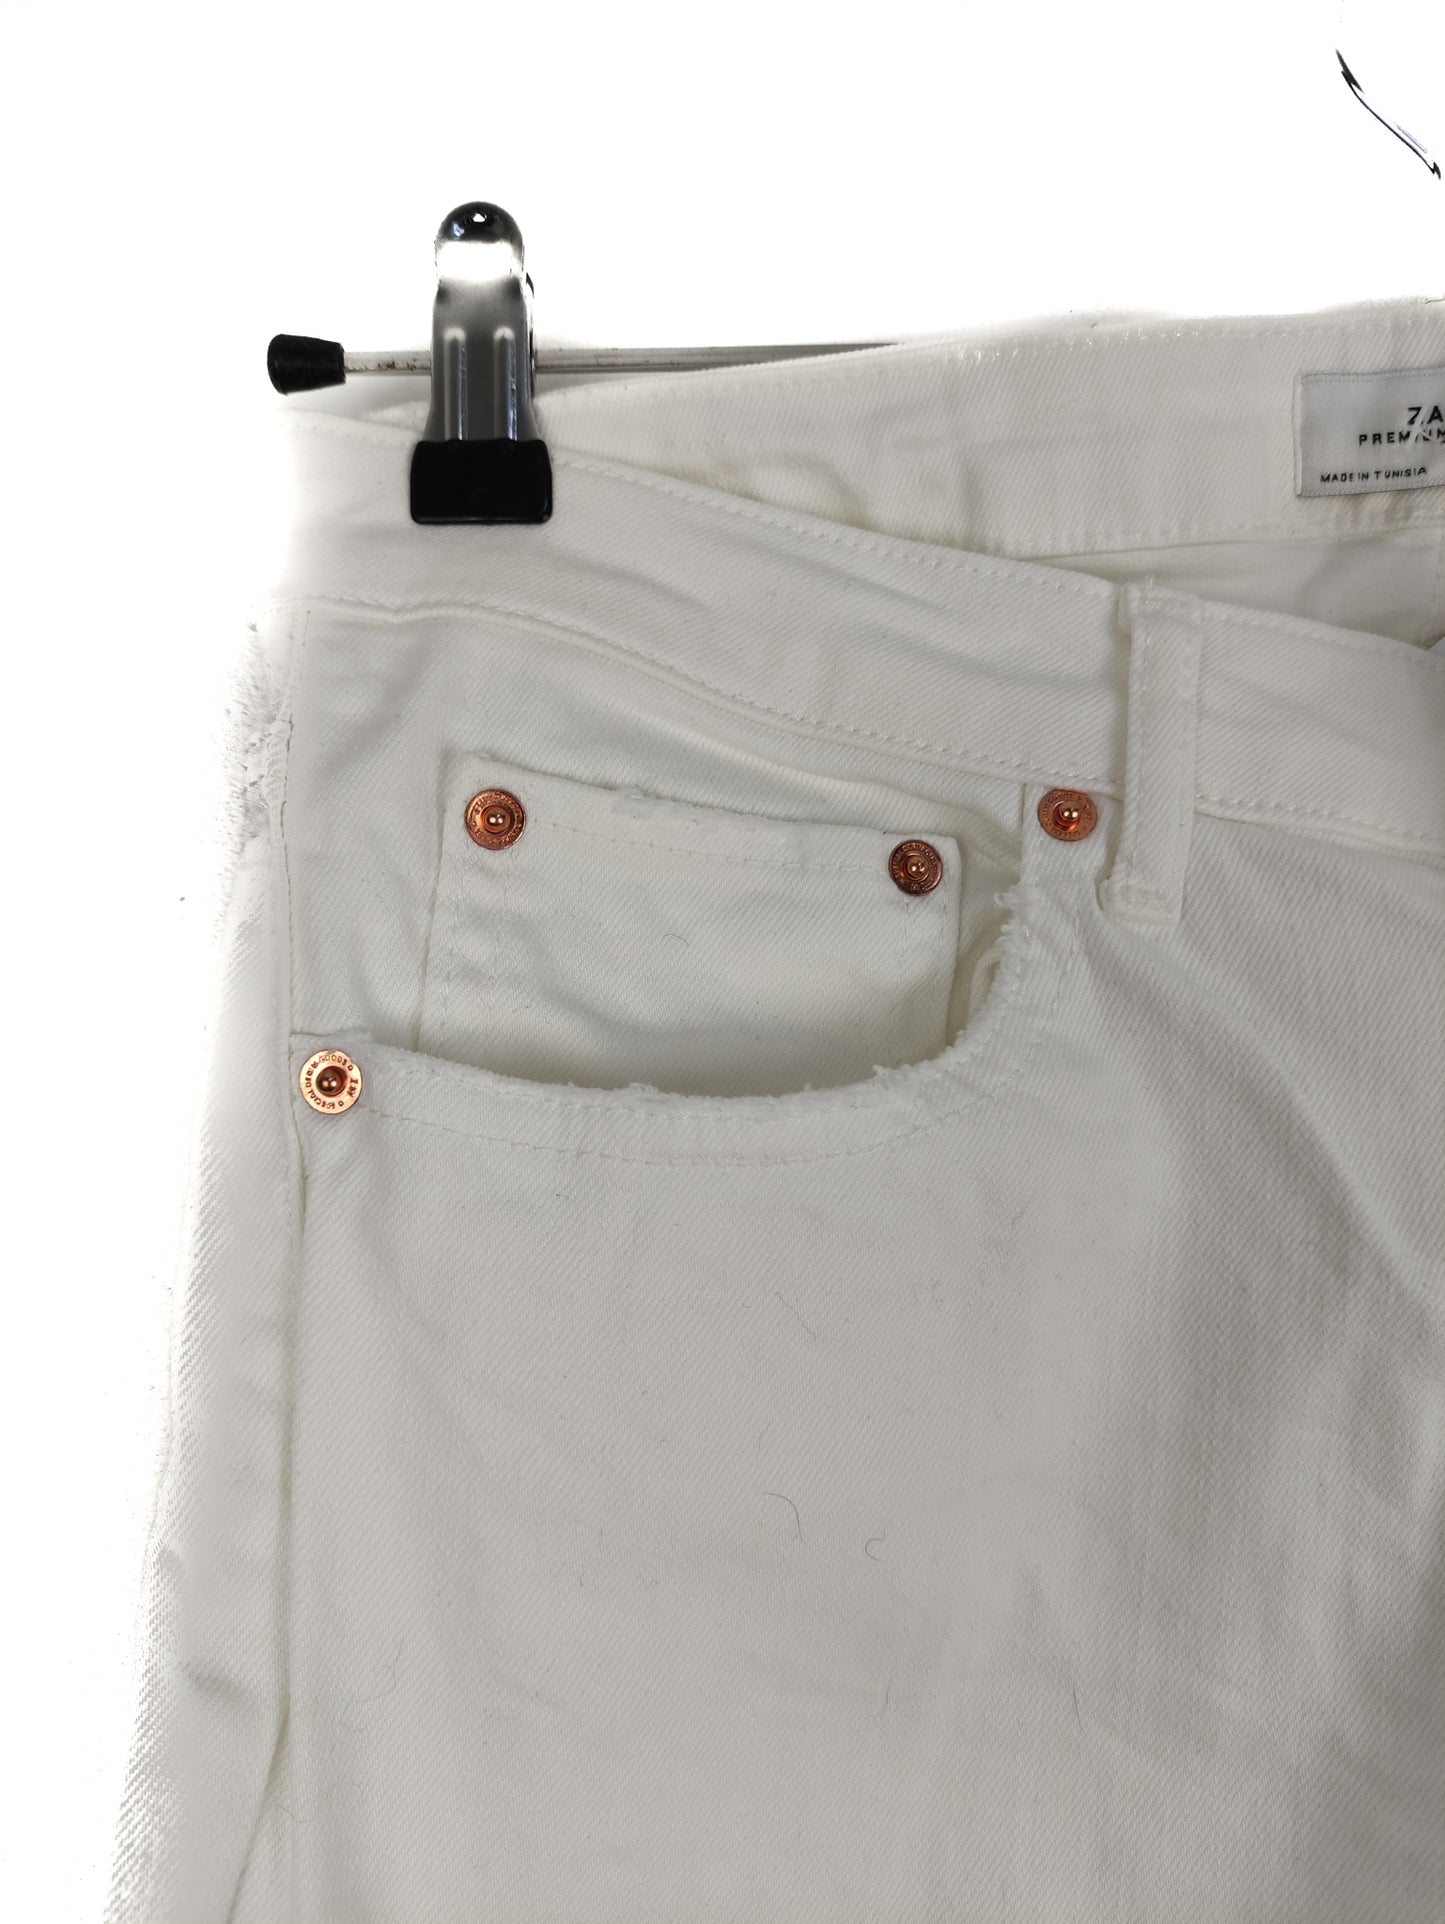 Γυναικείο Tζιν Παντελόνι ZARA σε Λευκό Χρώμα (Small)